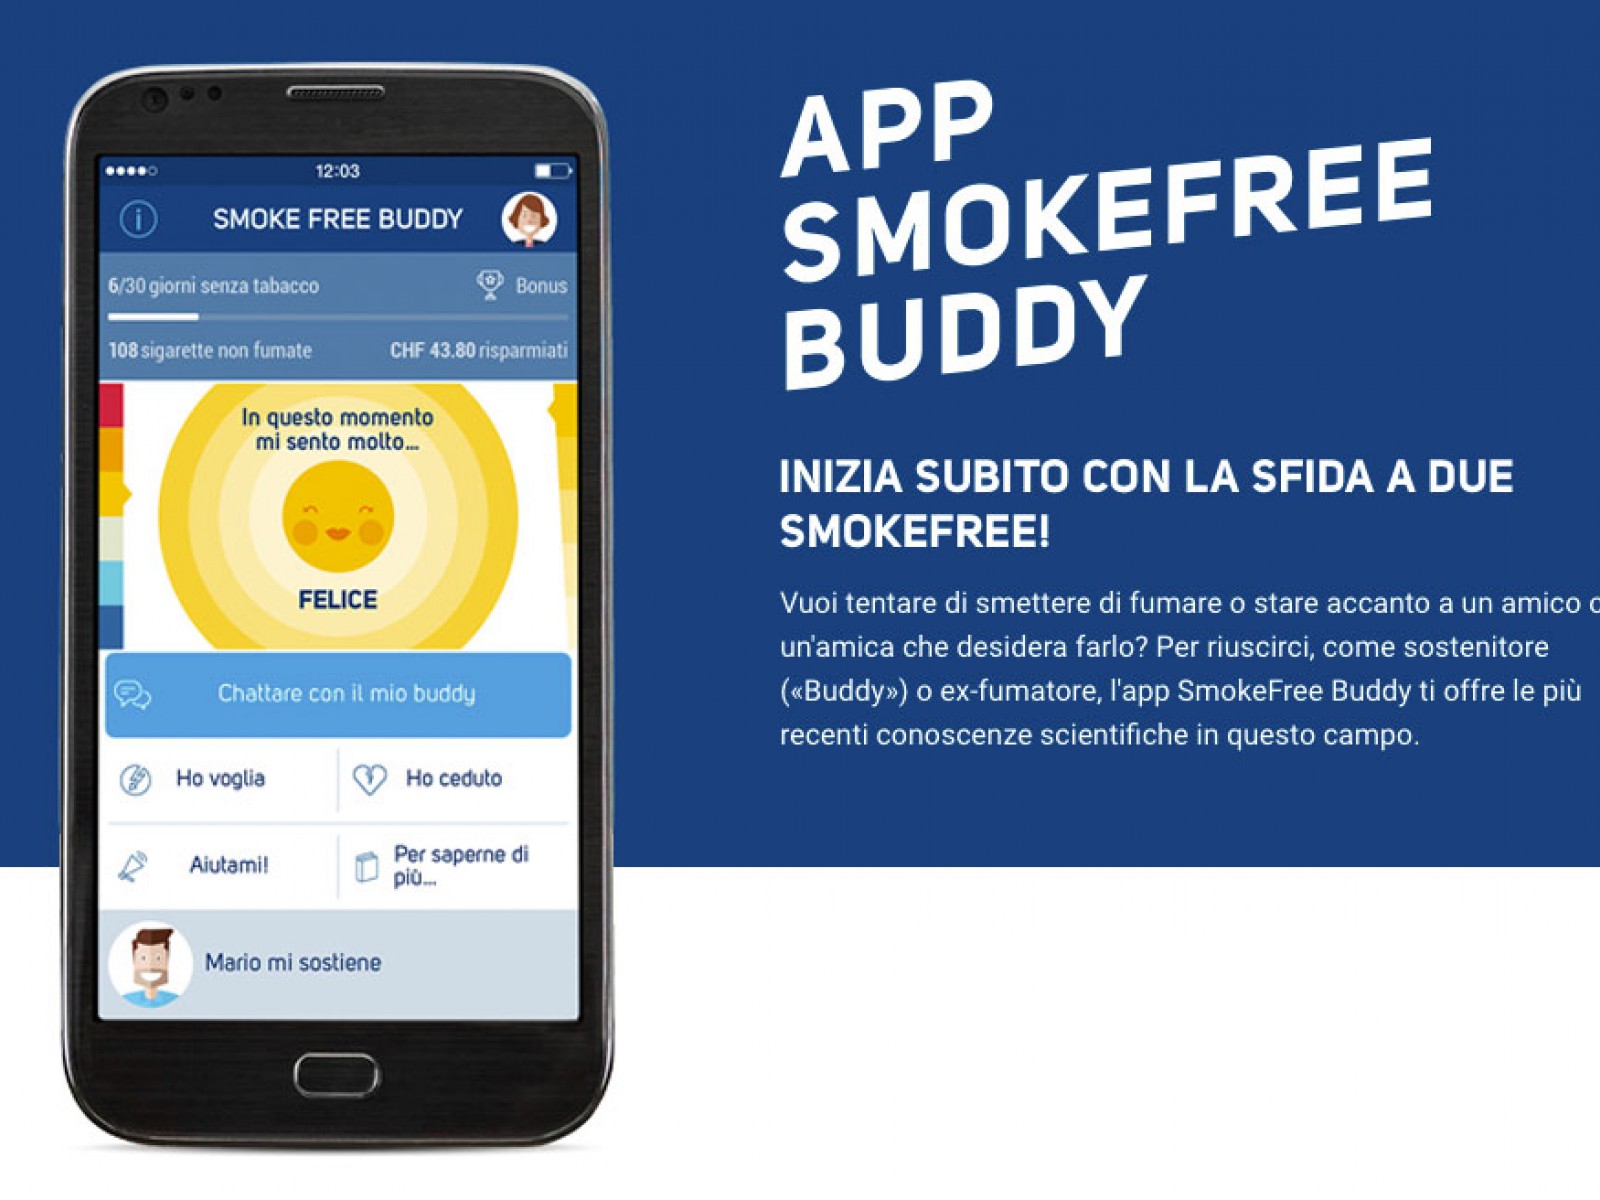 Dire addio alla sigaretta con un'app (e un concorso)